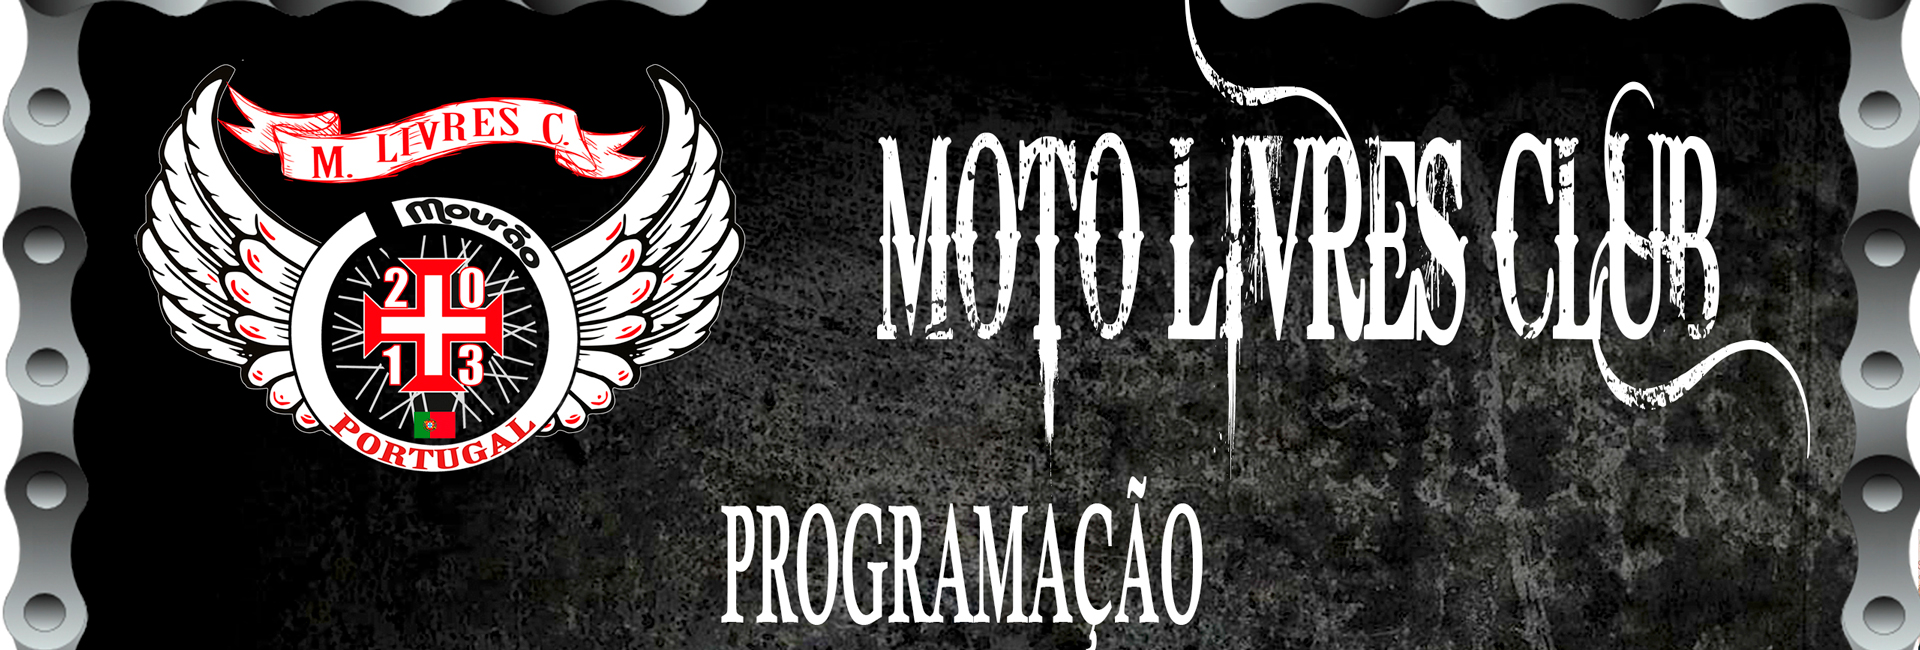 Moto Livres Club – 3ª Concentração Motard